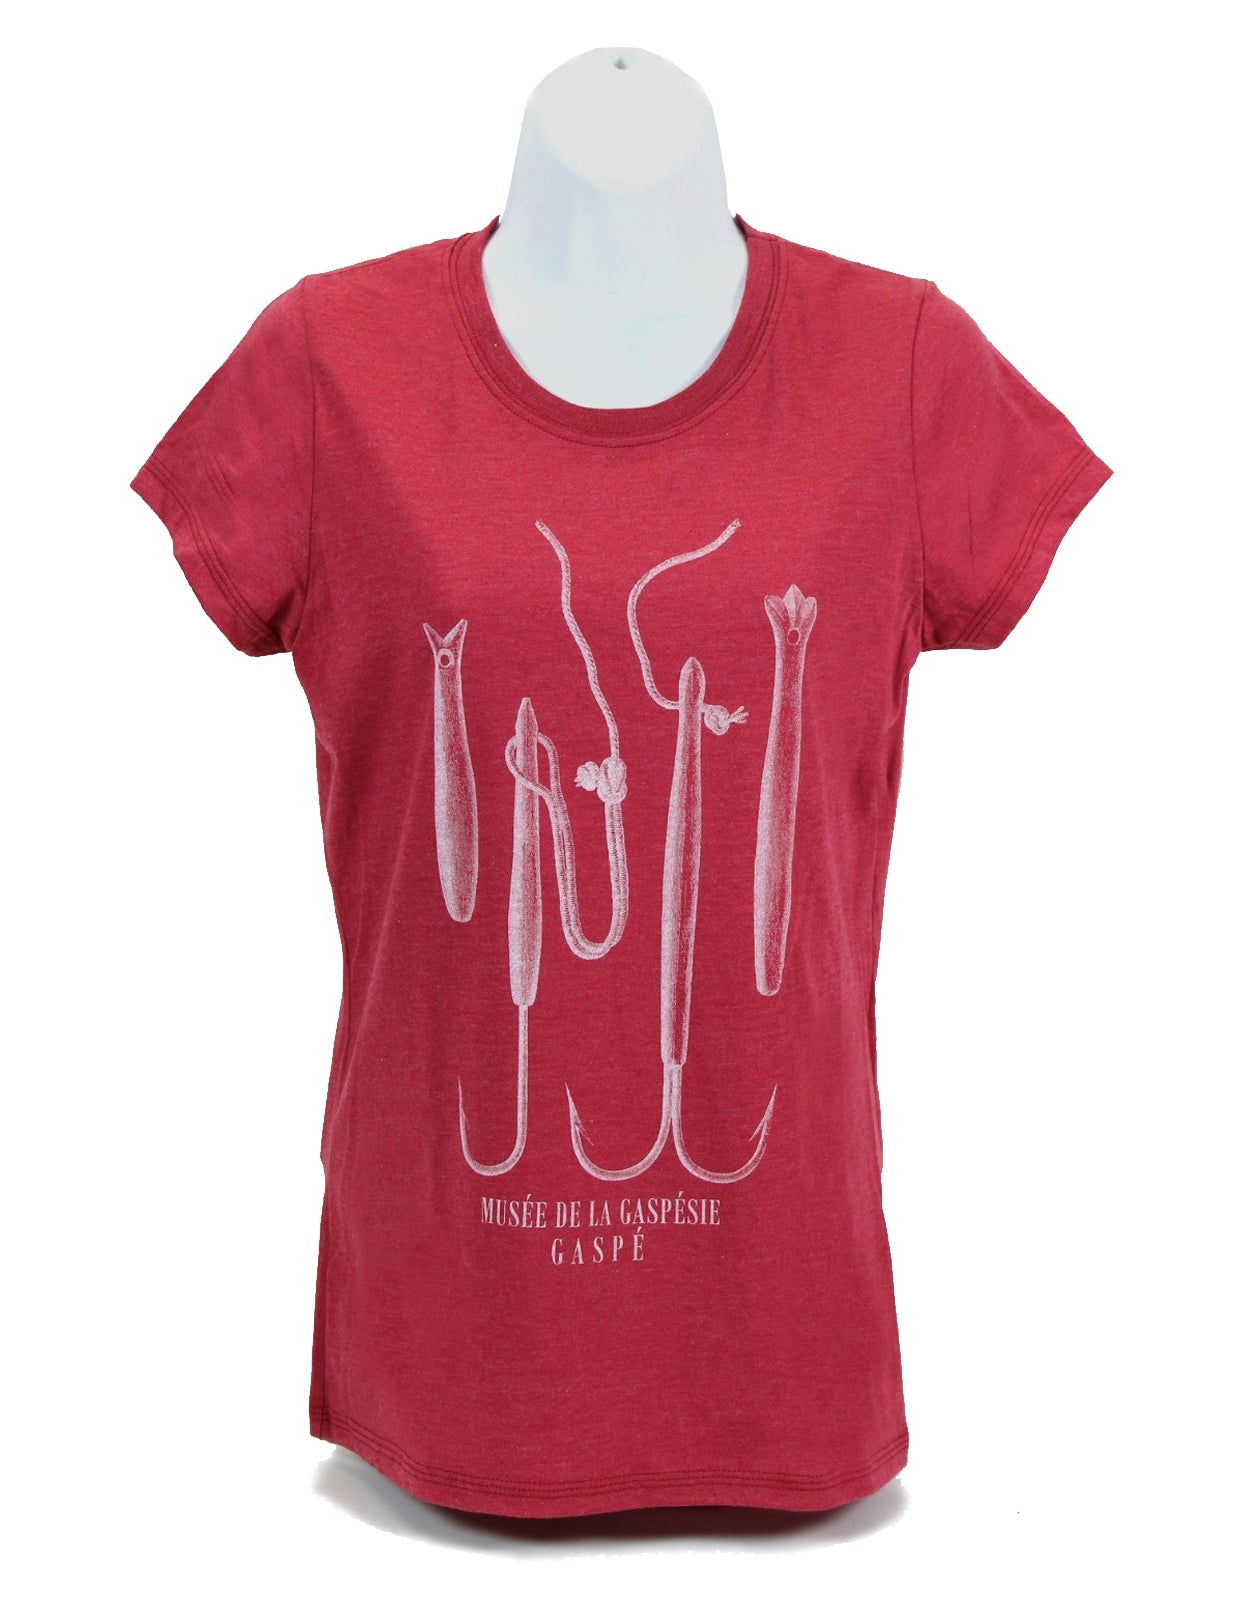 Hooks T-shirt for women